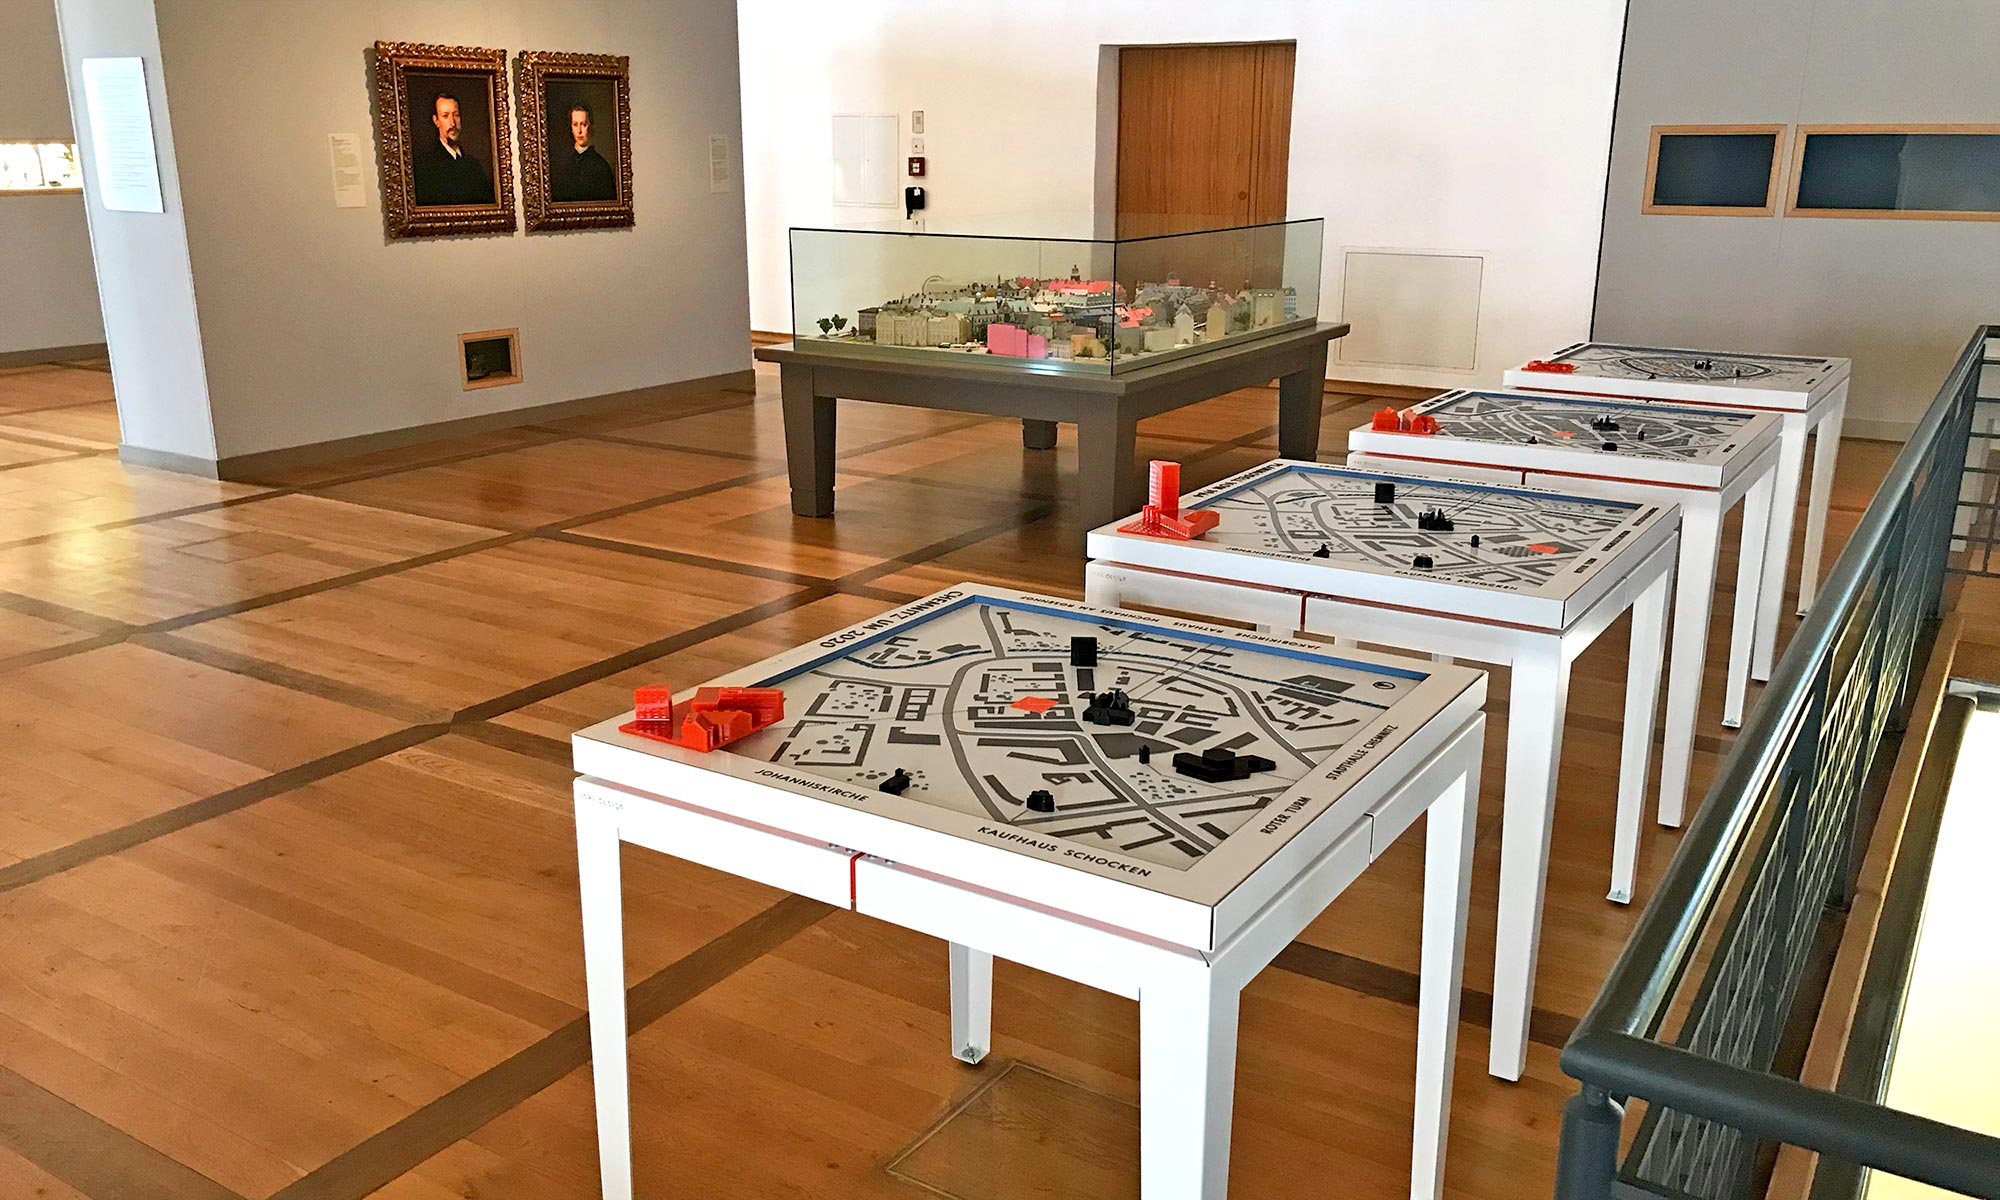 Ein Ausstellungsraume des Schlossbergmuseums in dem ein älteres Stadtmodell in einer großen Glasvitrine gezeigt wird. In unmittelbarer Nähe zu diesem Modell unter Glas die vier Tastmodelle von inkl.Design, die zum Anfassen einladen.